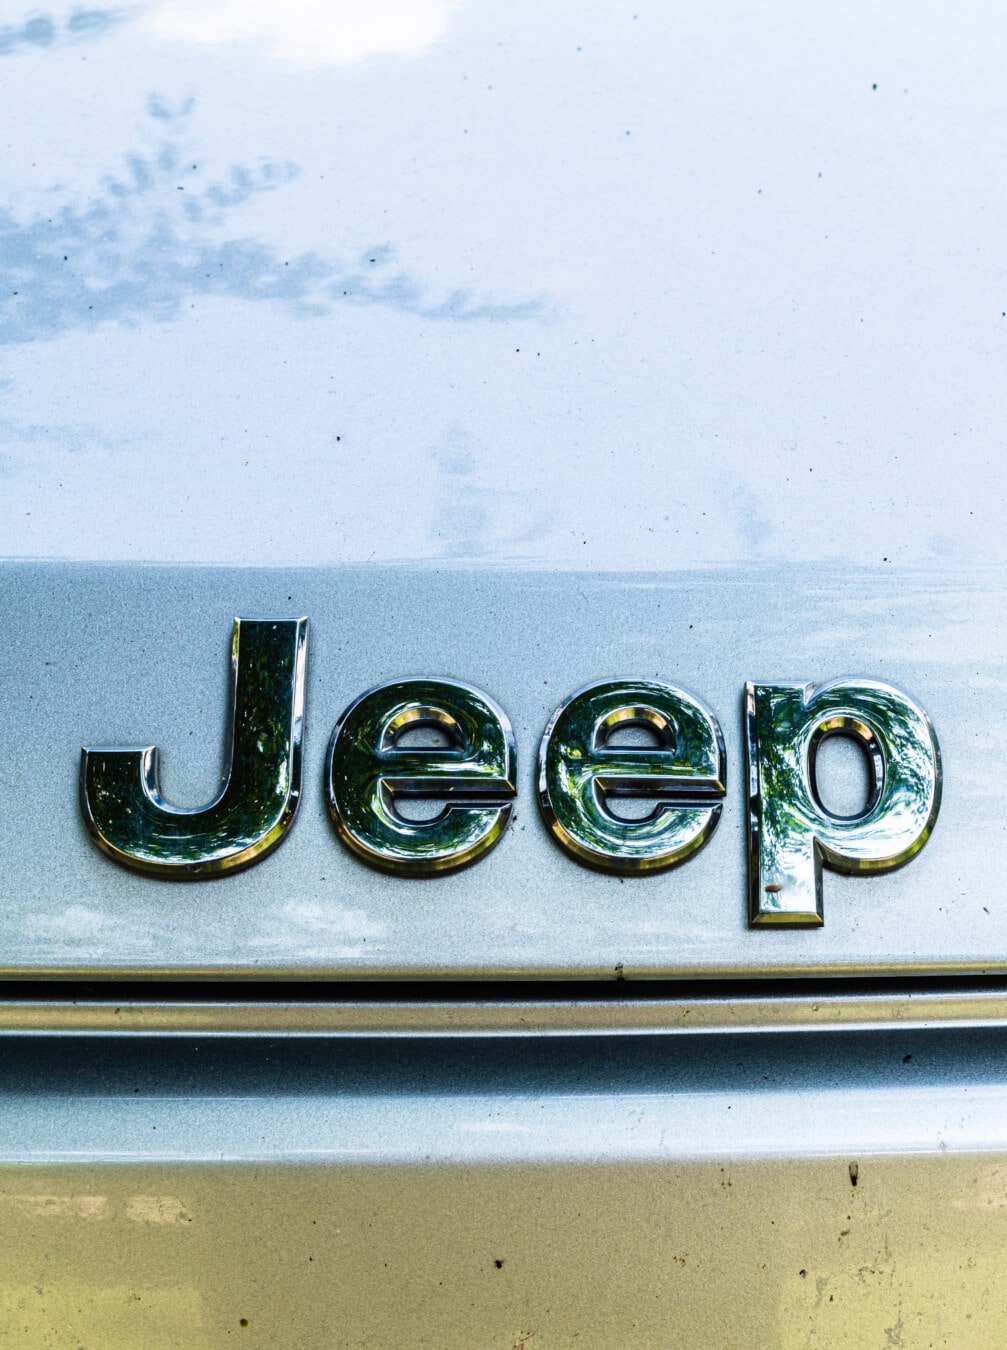 Jeep, bil, automobil, symbol, tegn, metallic, refleksion, kromi, tekst, årgang